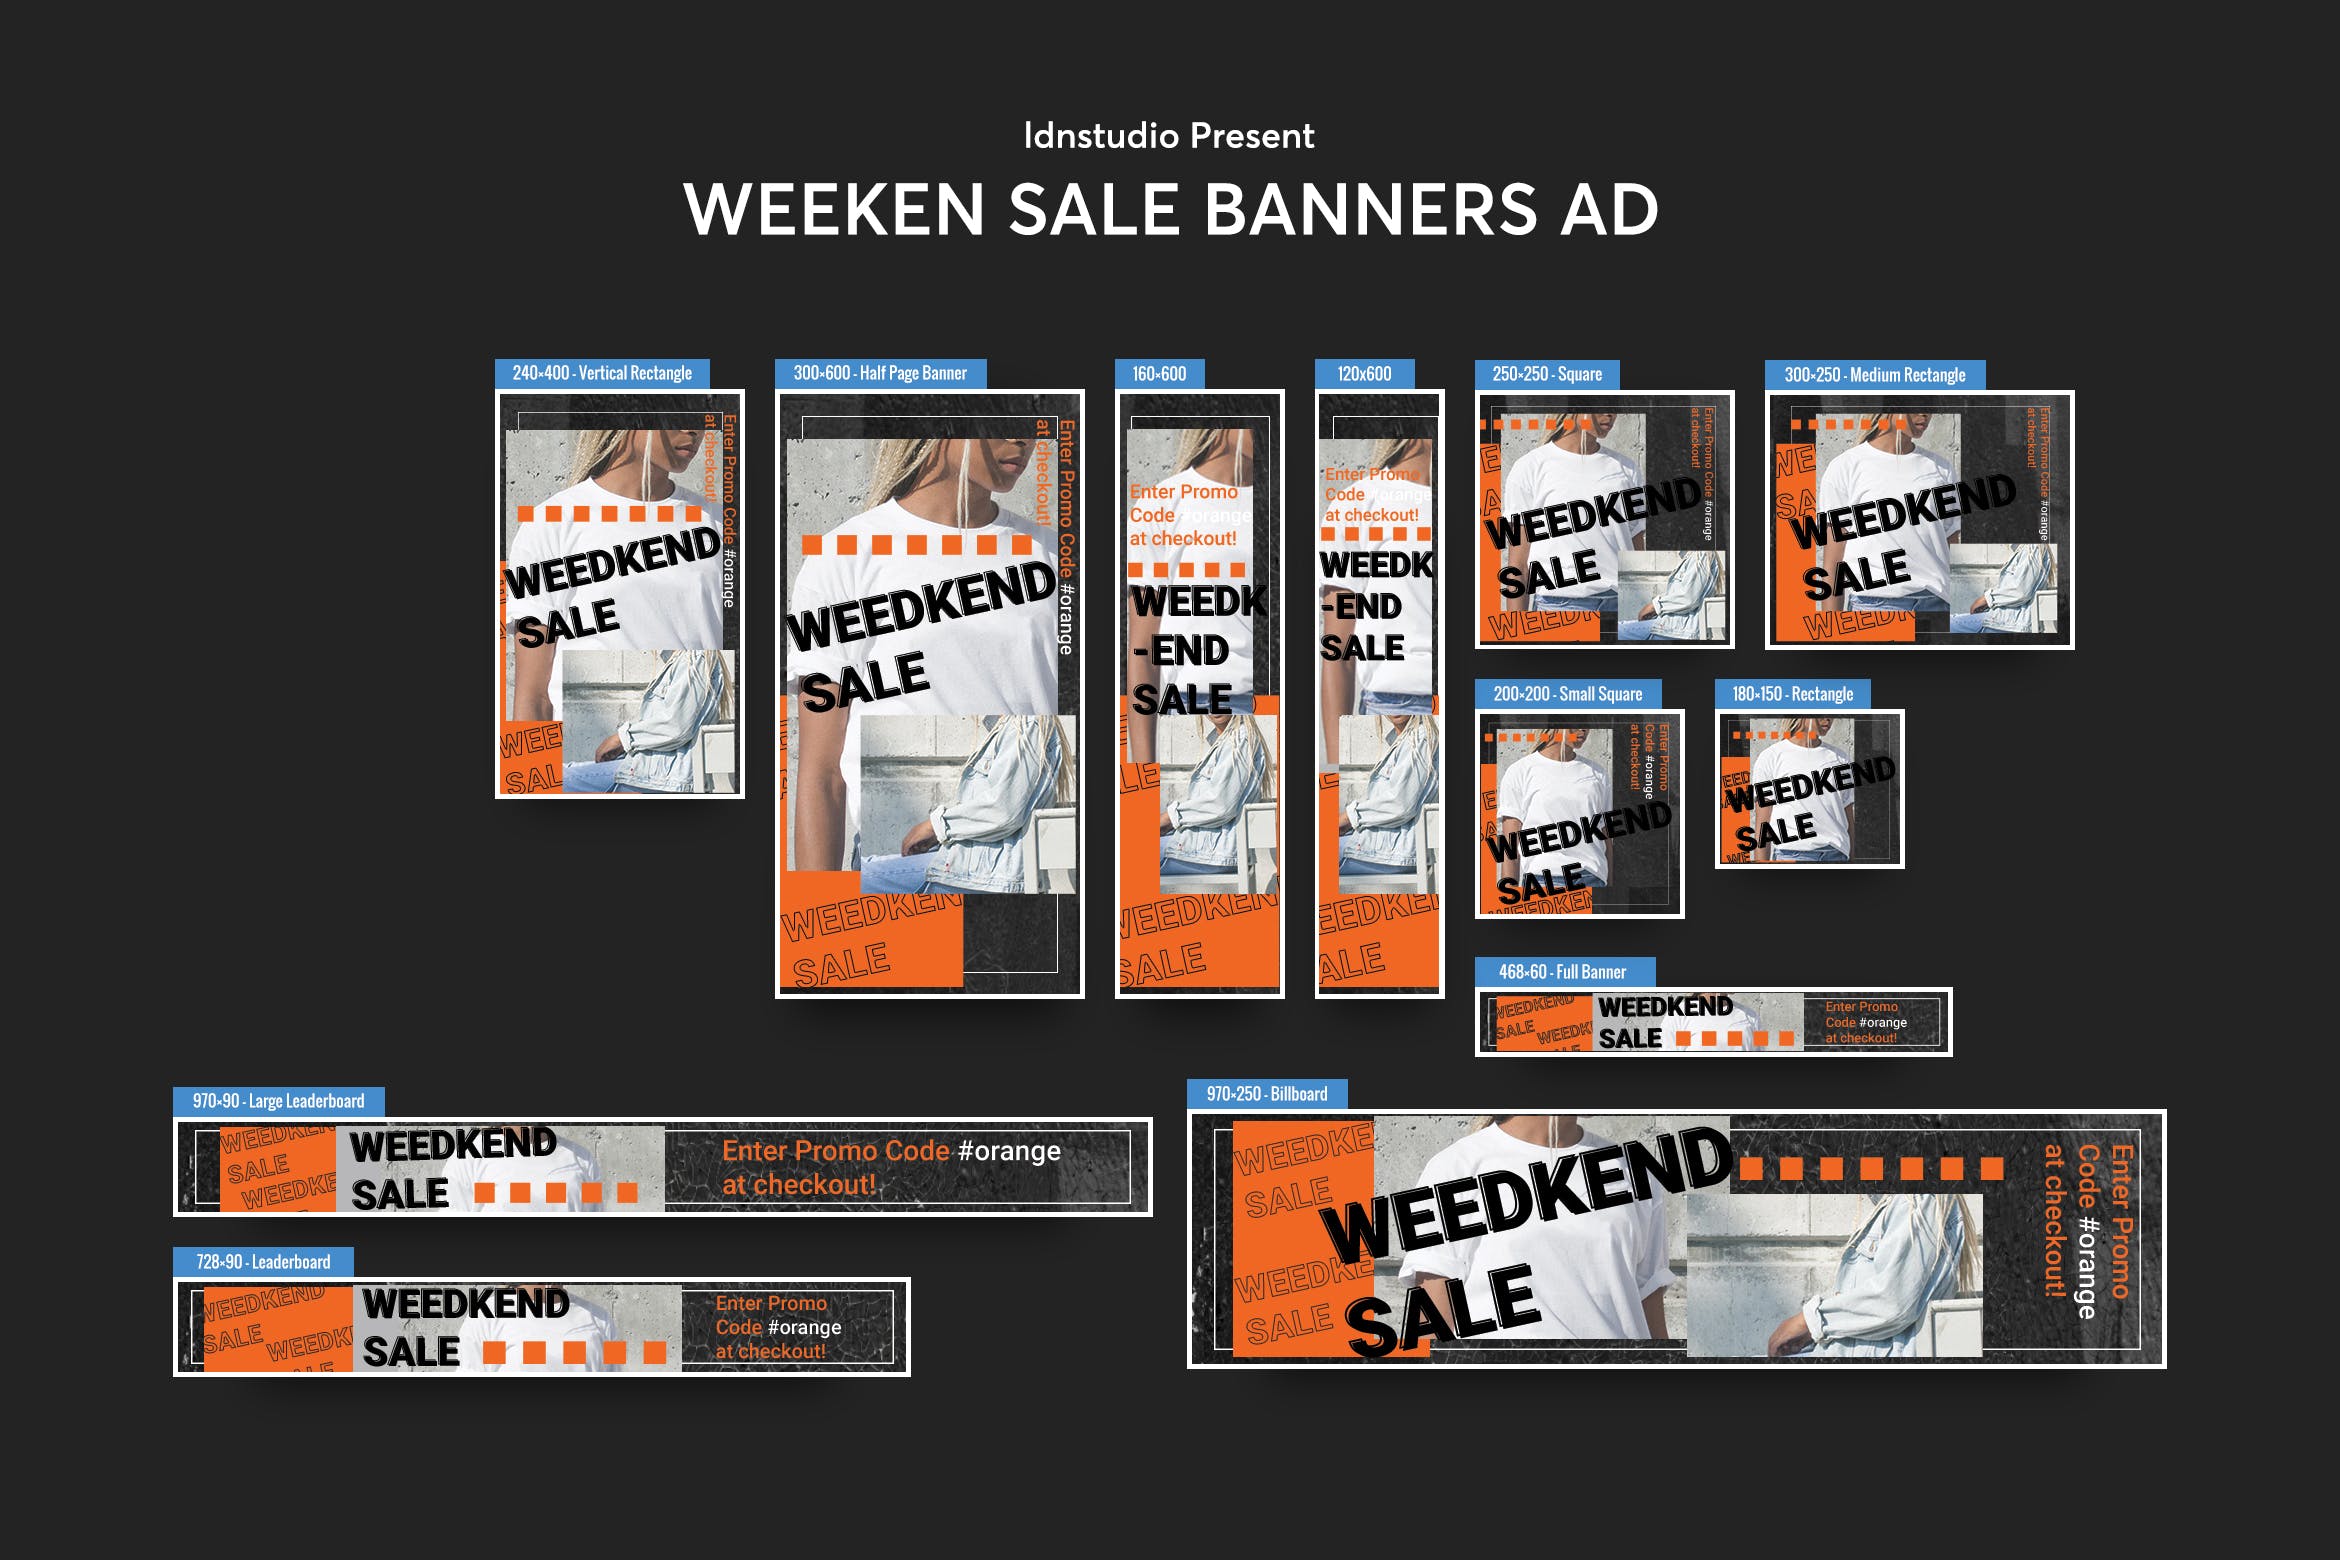 周末促销活动主题网站Banner横幅第一素材精选广告模板 Weeken Sale Banners Ad PSD Template插图